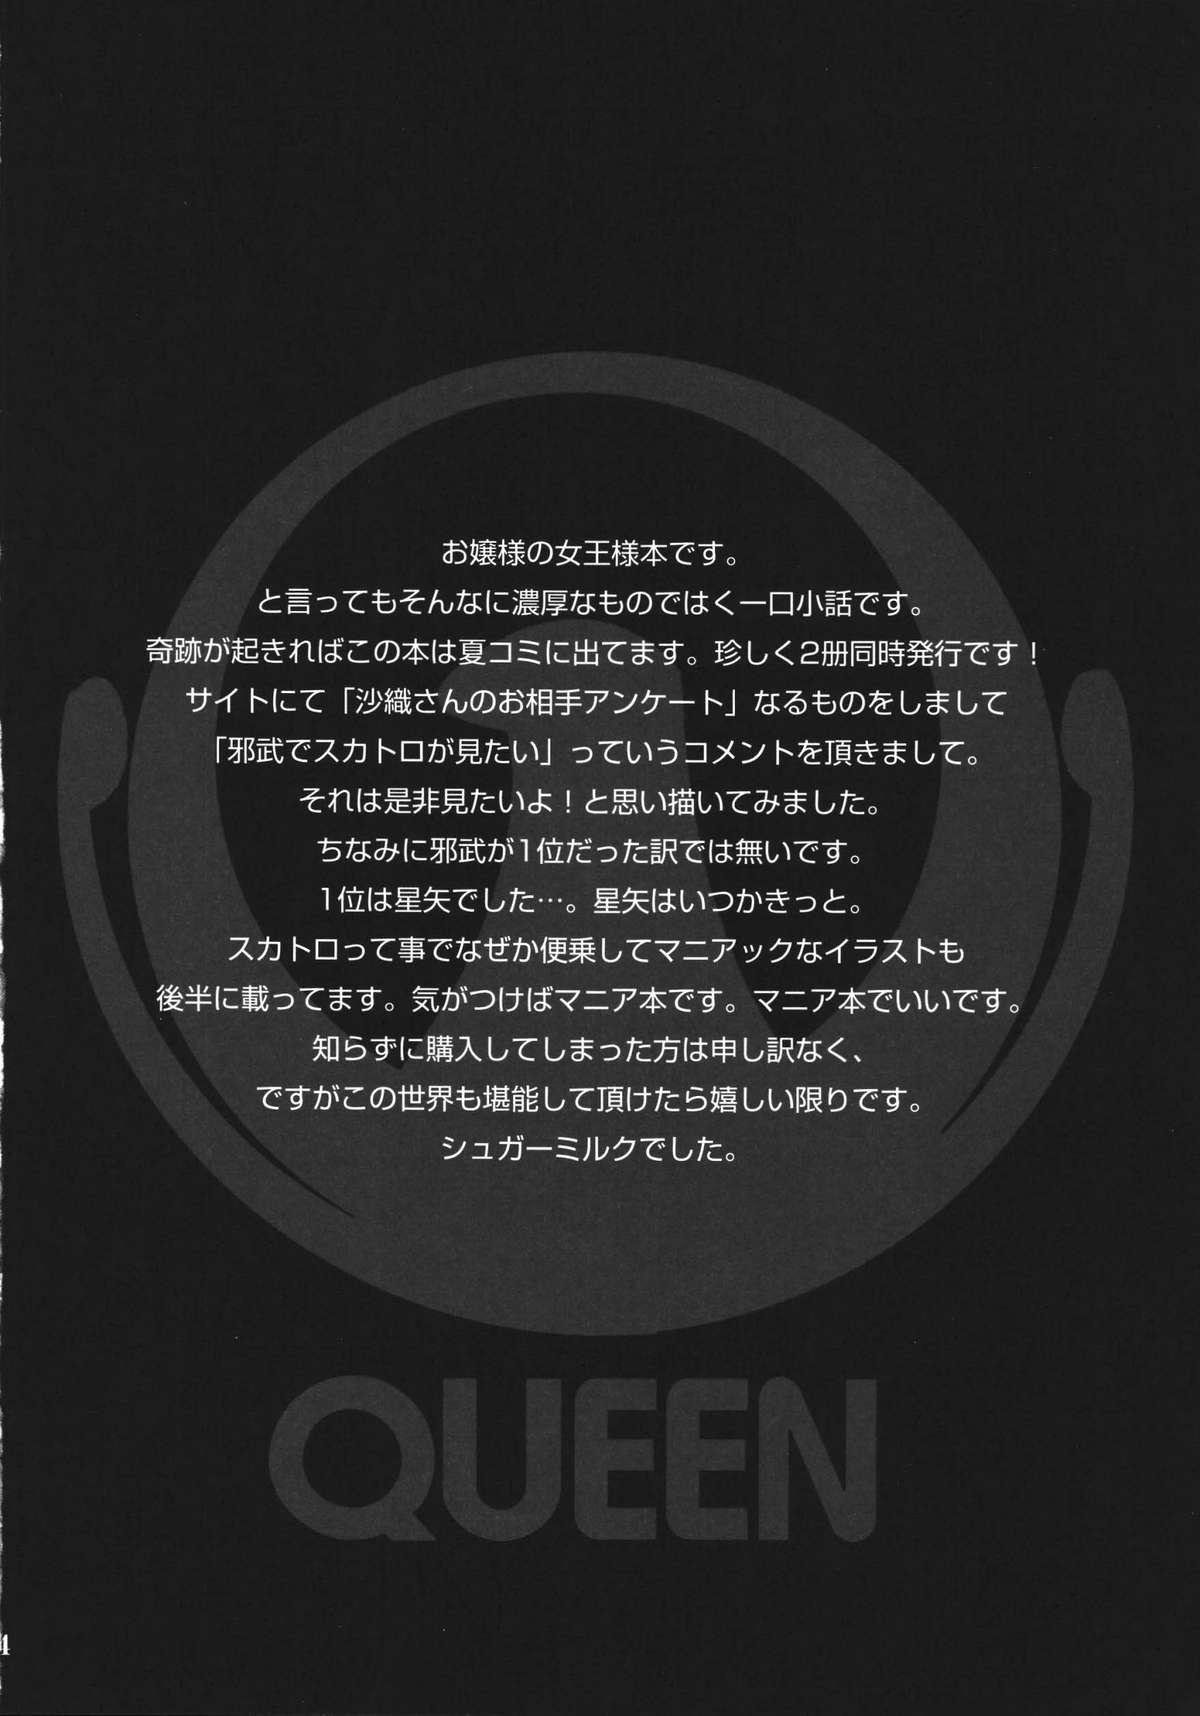 Queen 3